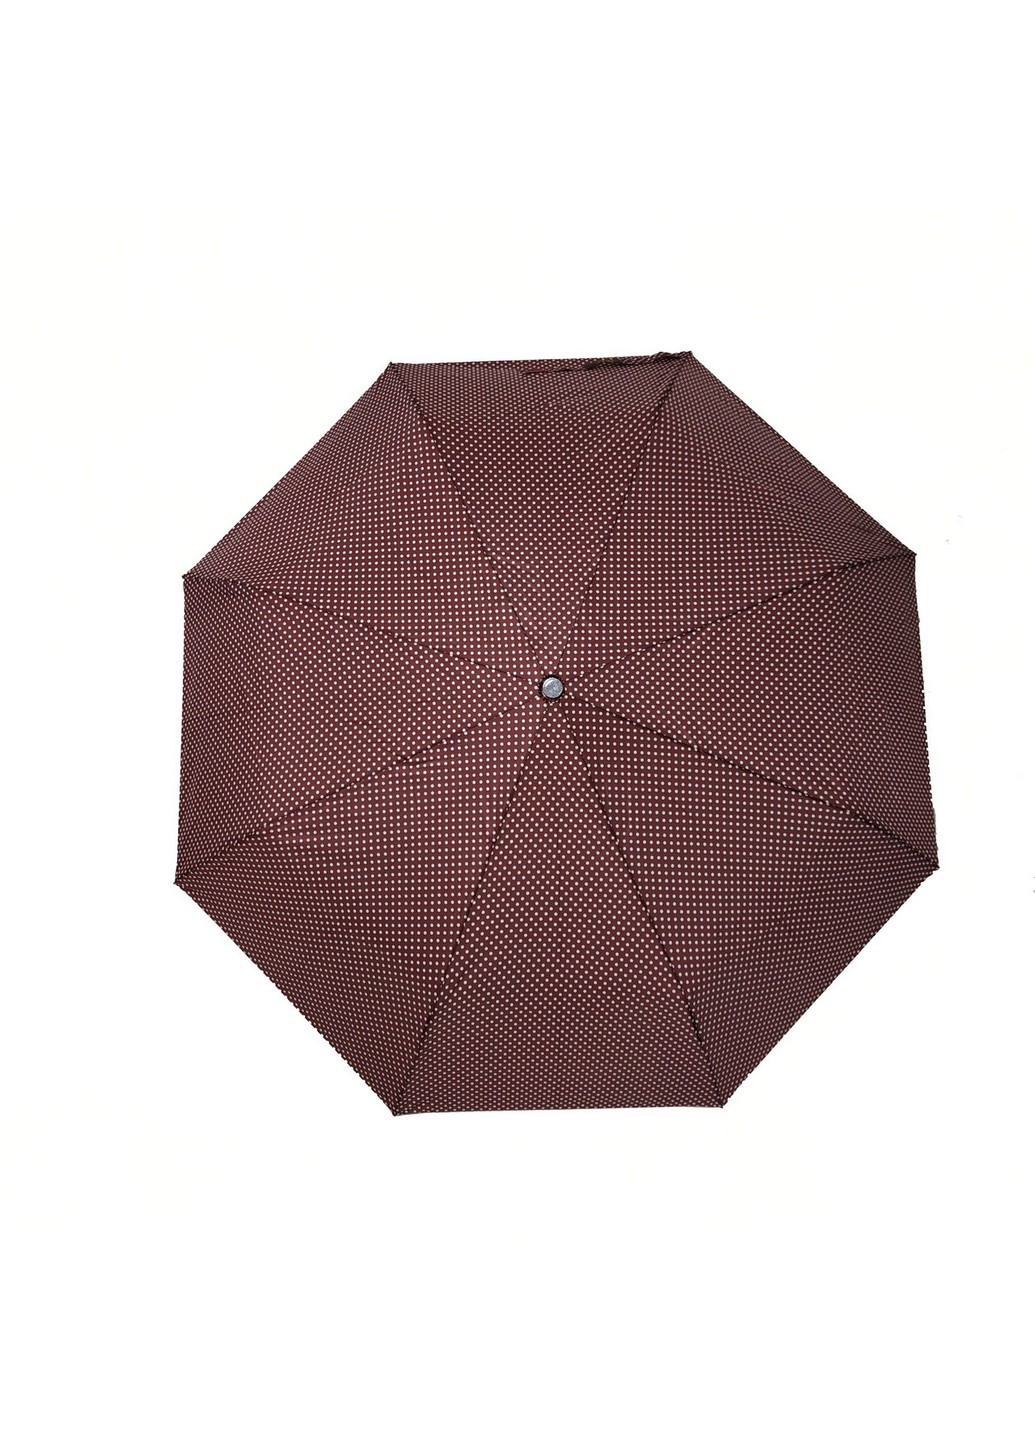 Женский зонт механический 97 см SL (259212753)